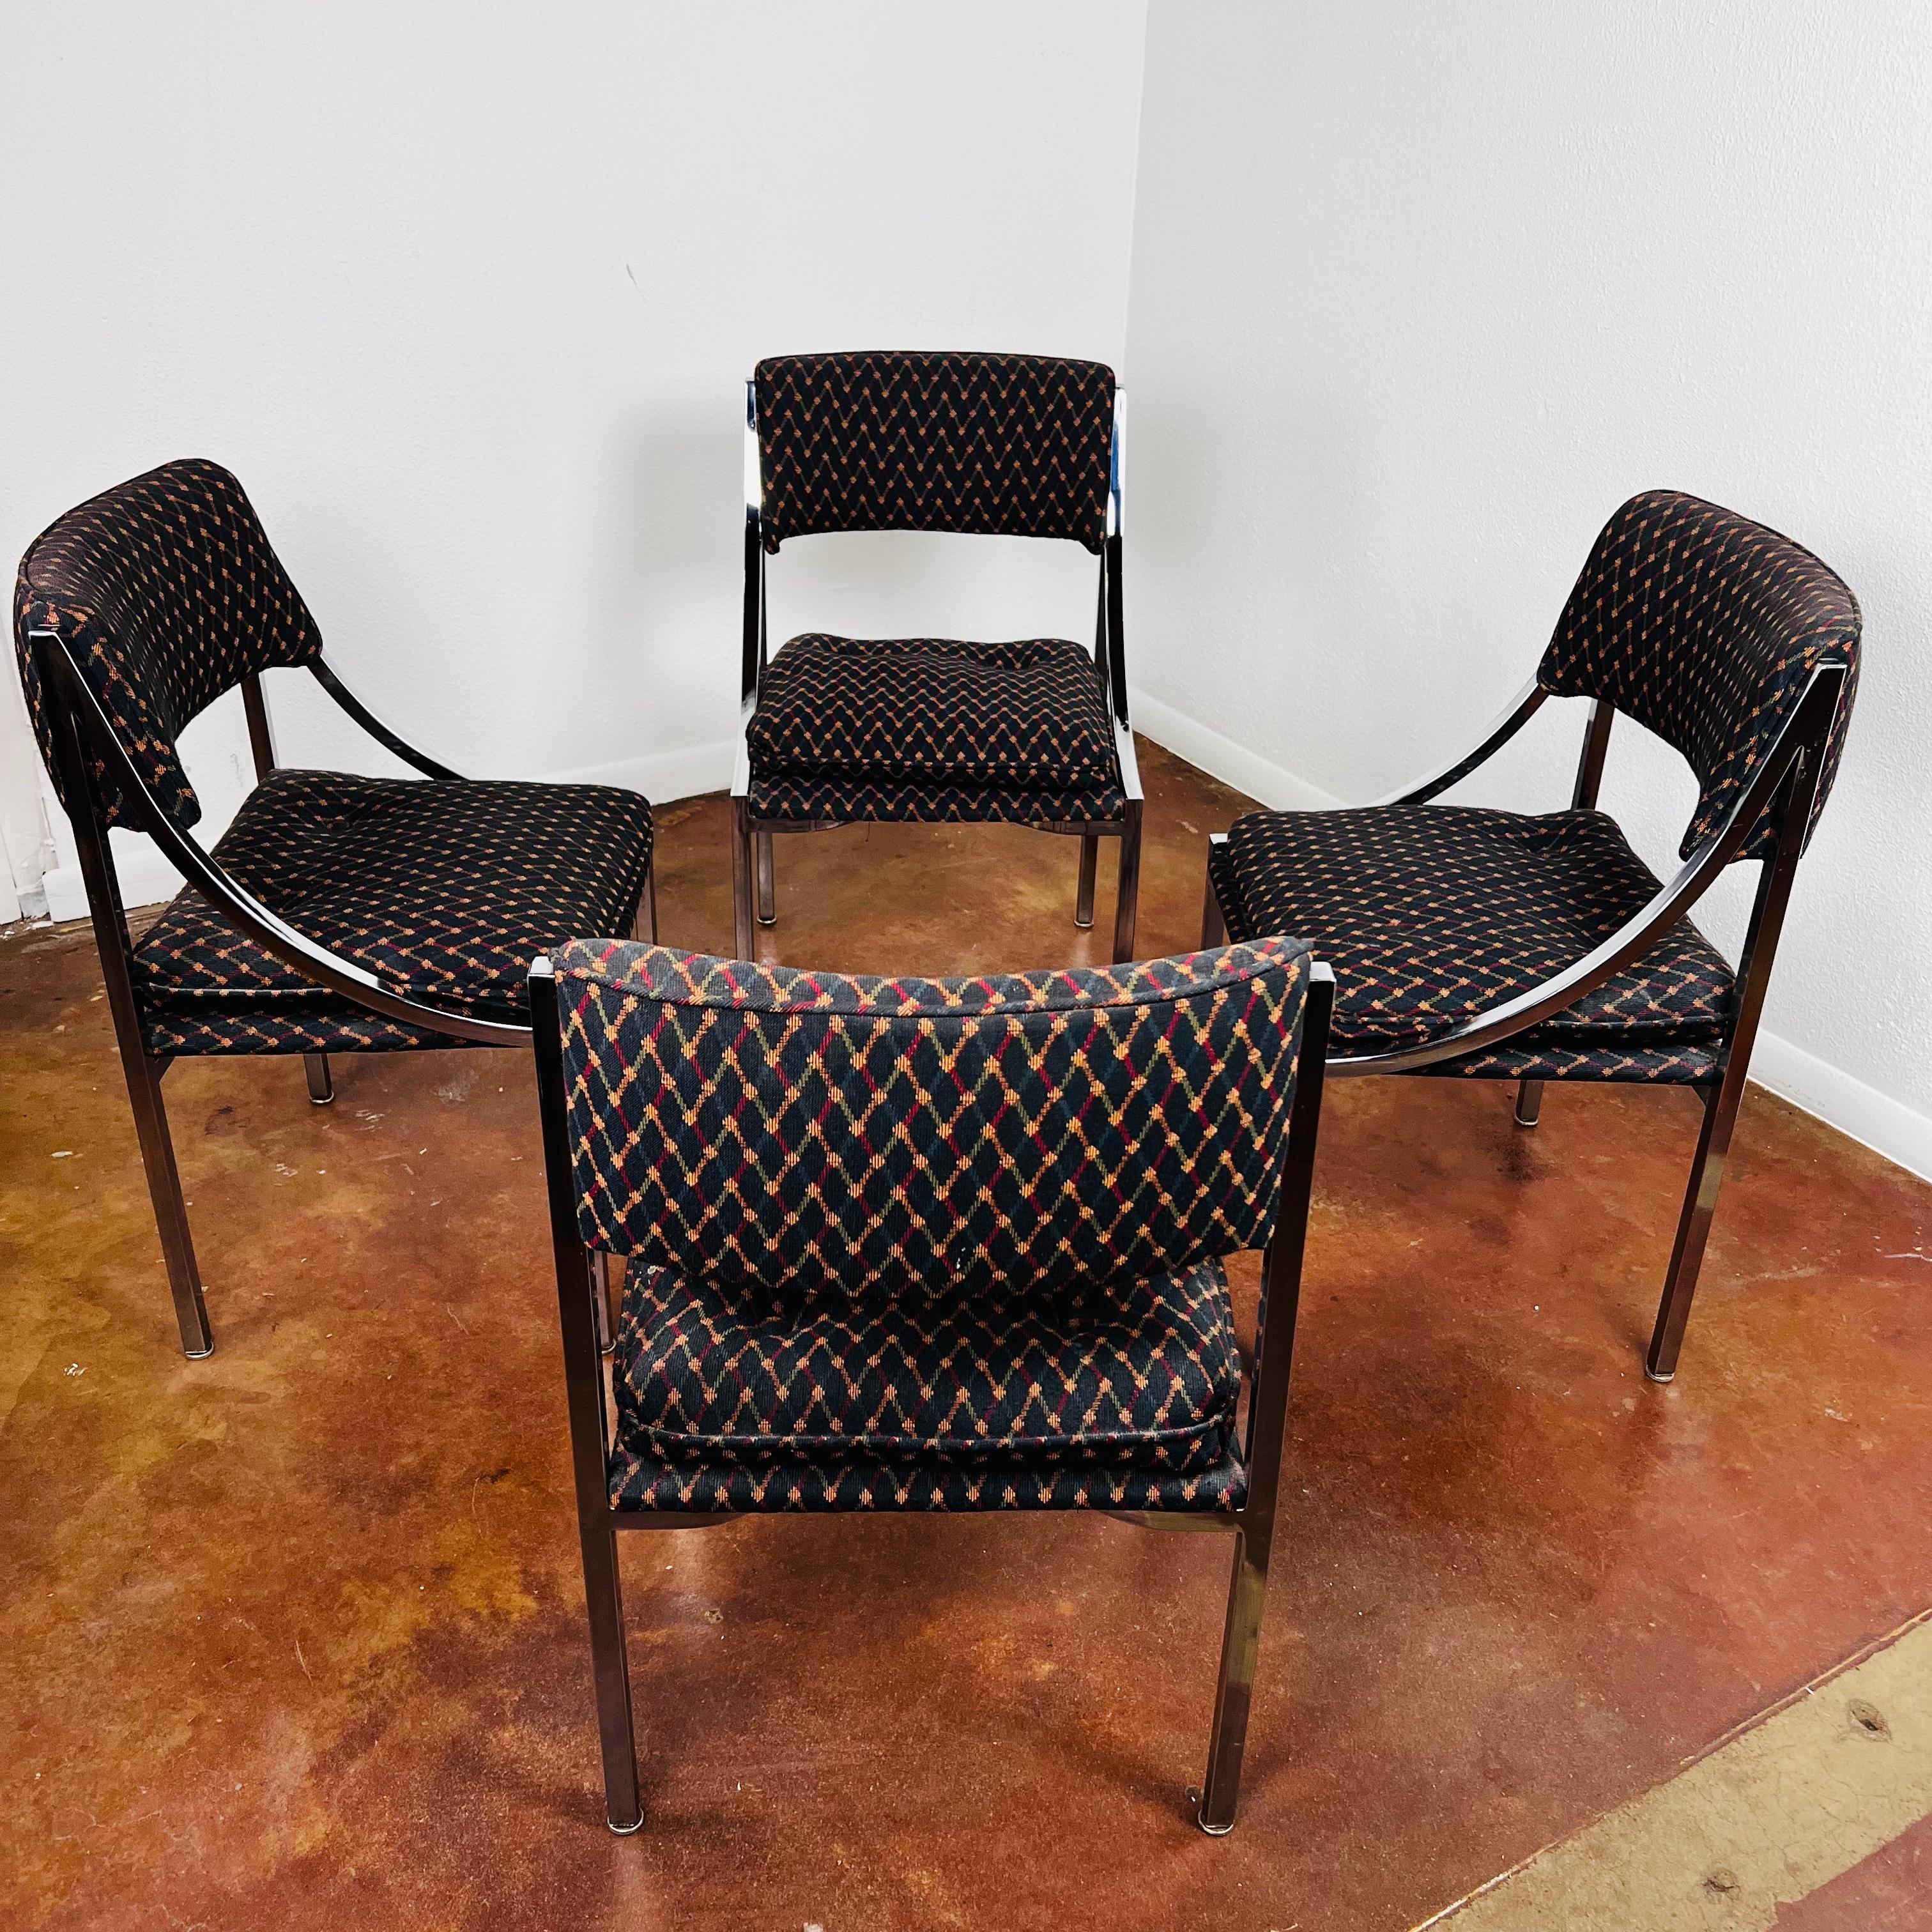 Fabuleux ensemble de 4 chaises de salle à manger vintage par Wolfgang Hoffmann pour Howell Co. Les cadres en acier plat chromé soutiennent les sièges et le dossier rembourrés. Sellerie propre, quelques signes d'usure dus à l'âge et à l'utilisation